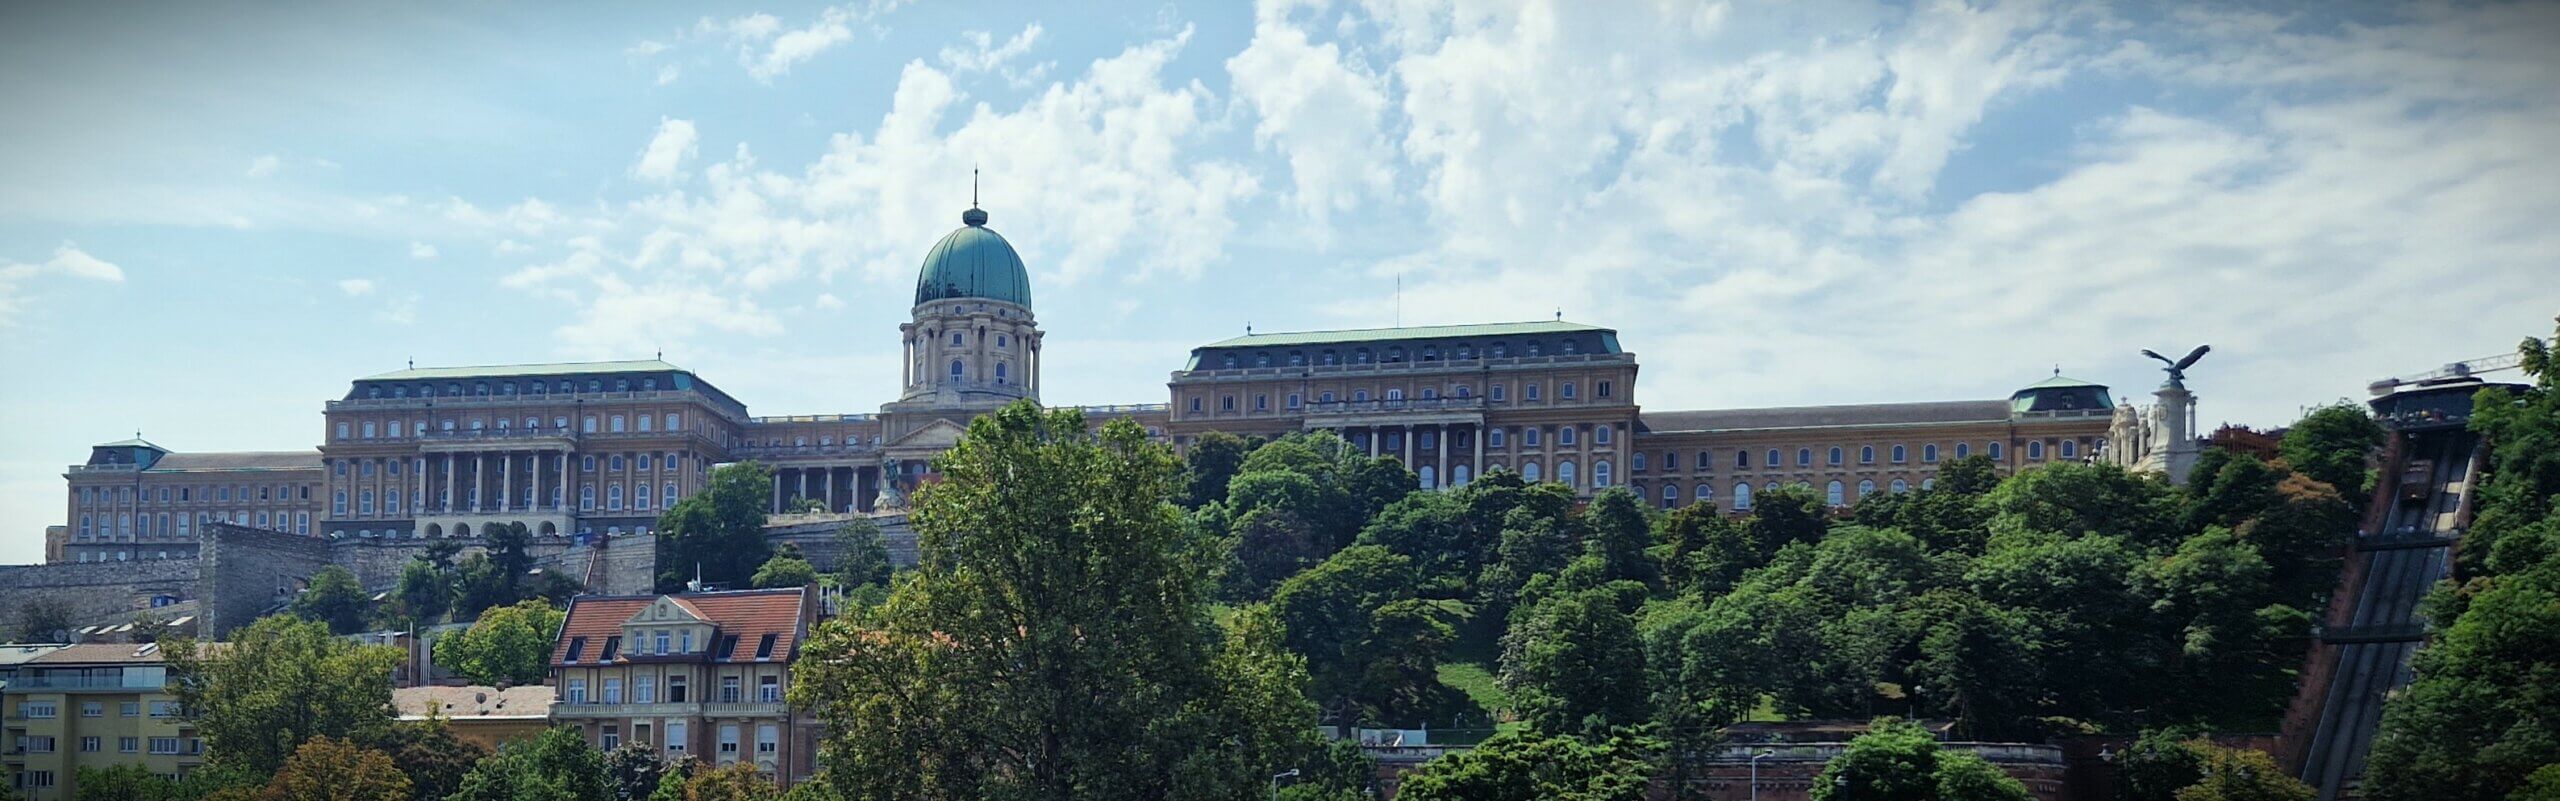 Palais du Buda - Château Budapest